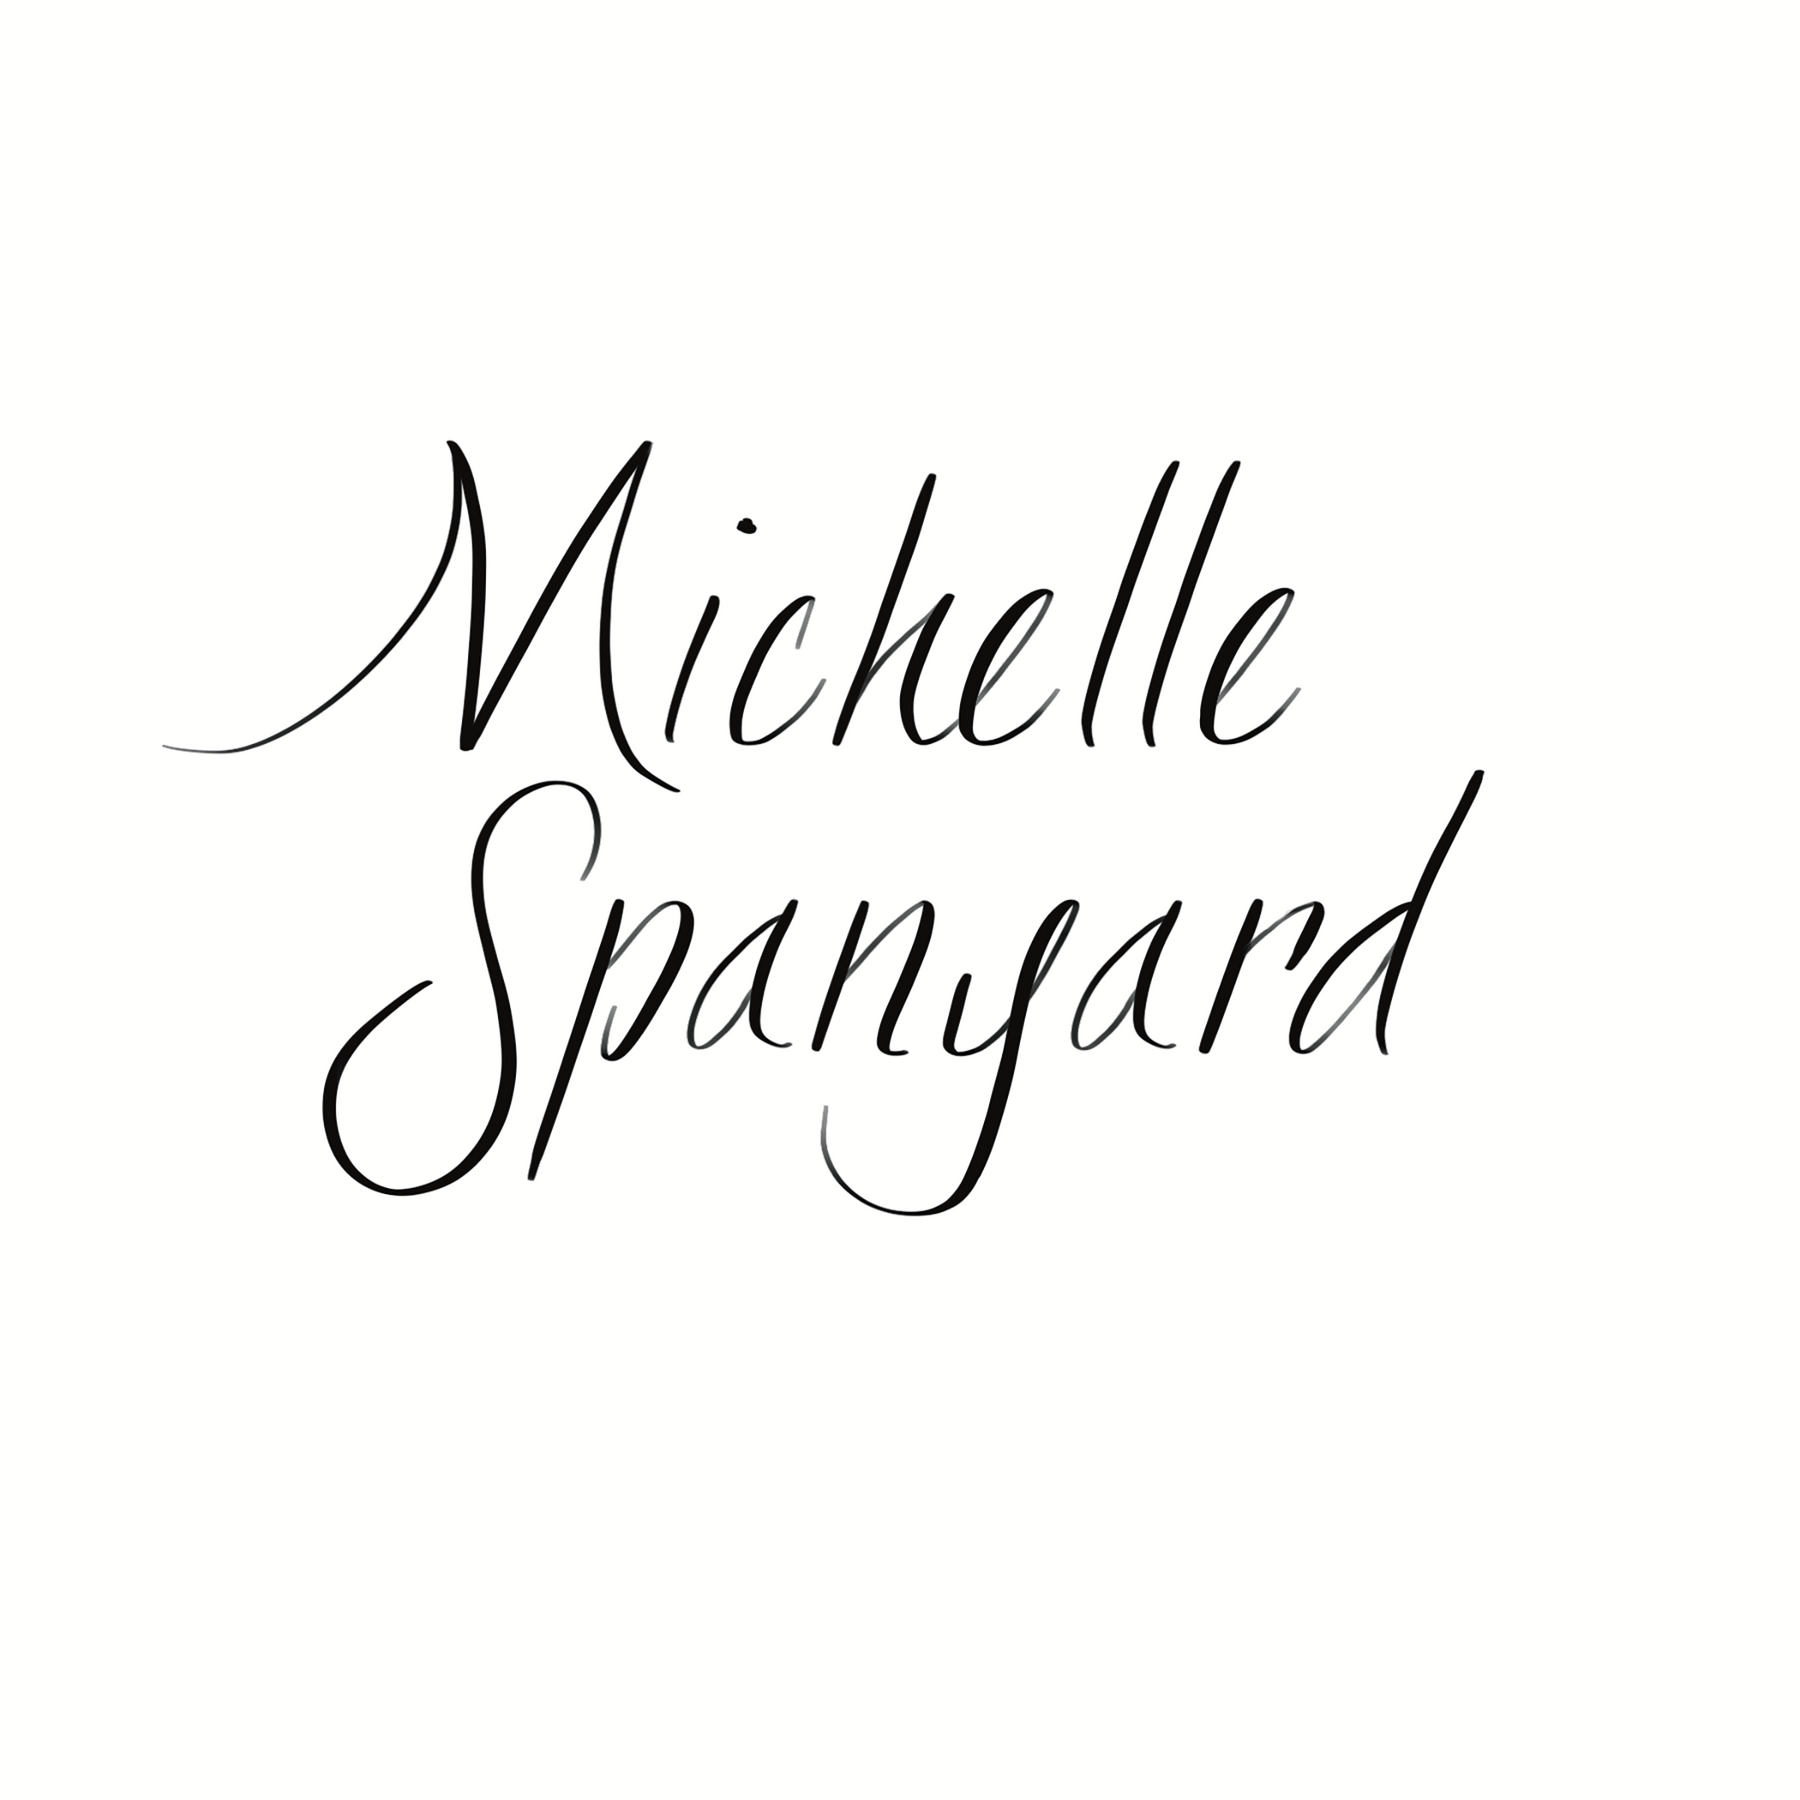 Michelle Spanyard